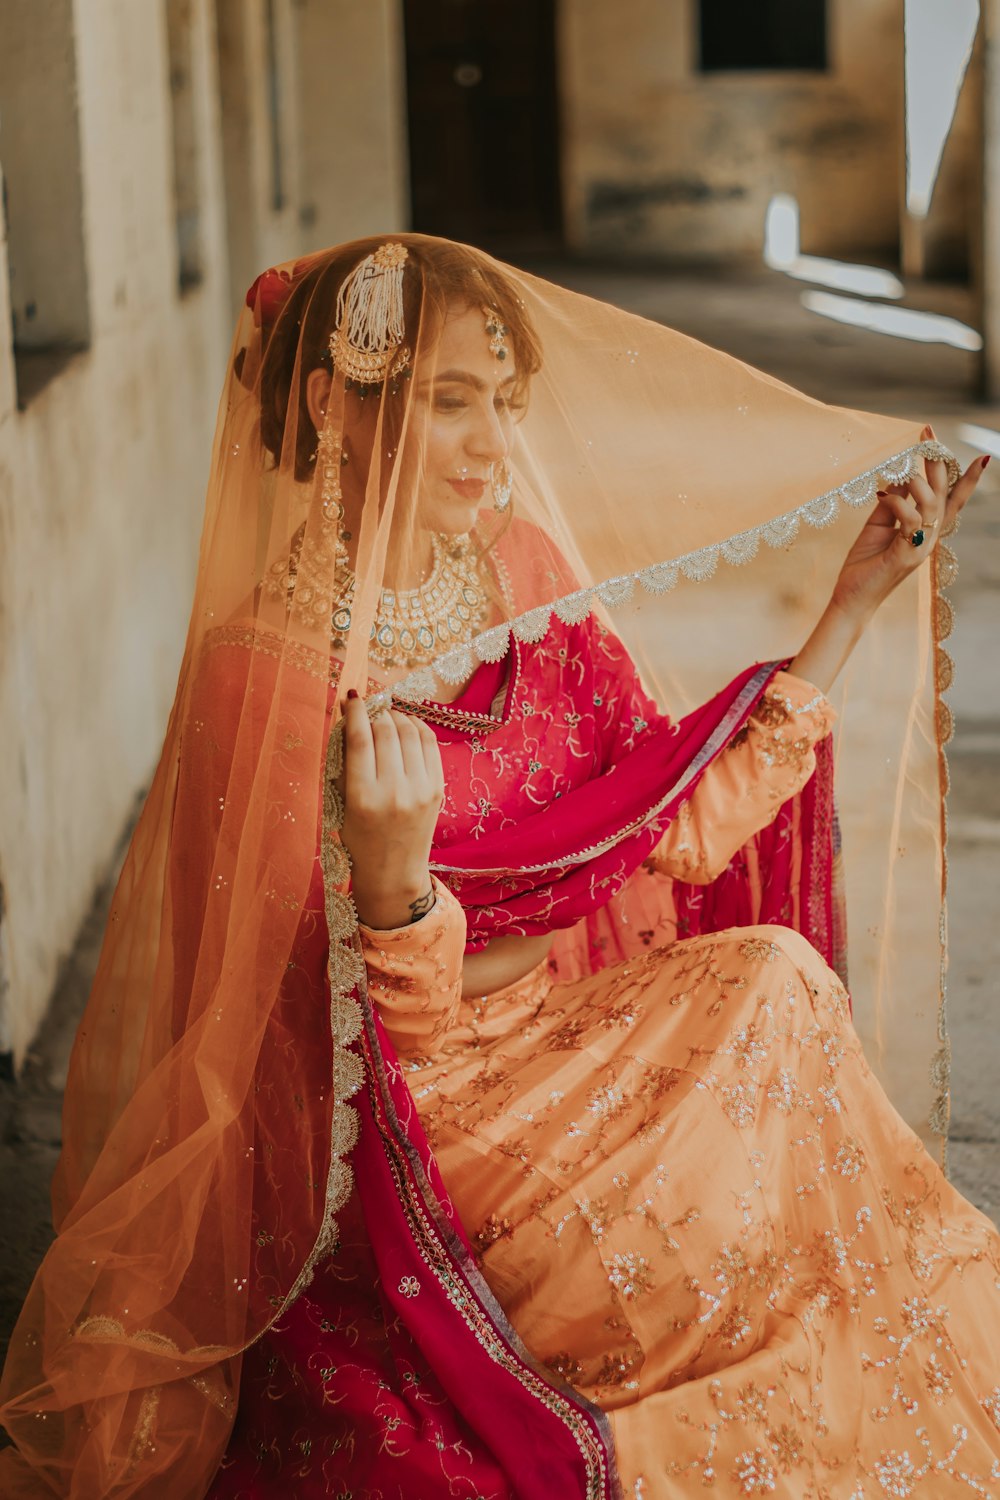 Foto Mulher no vestido sari vermelho e dourado – Imagem de Noiva indiana  grátis no Unsplash